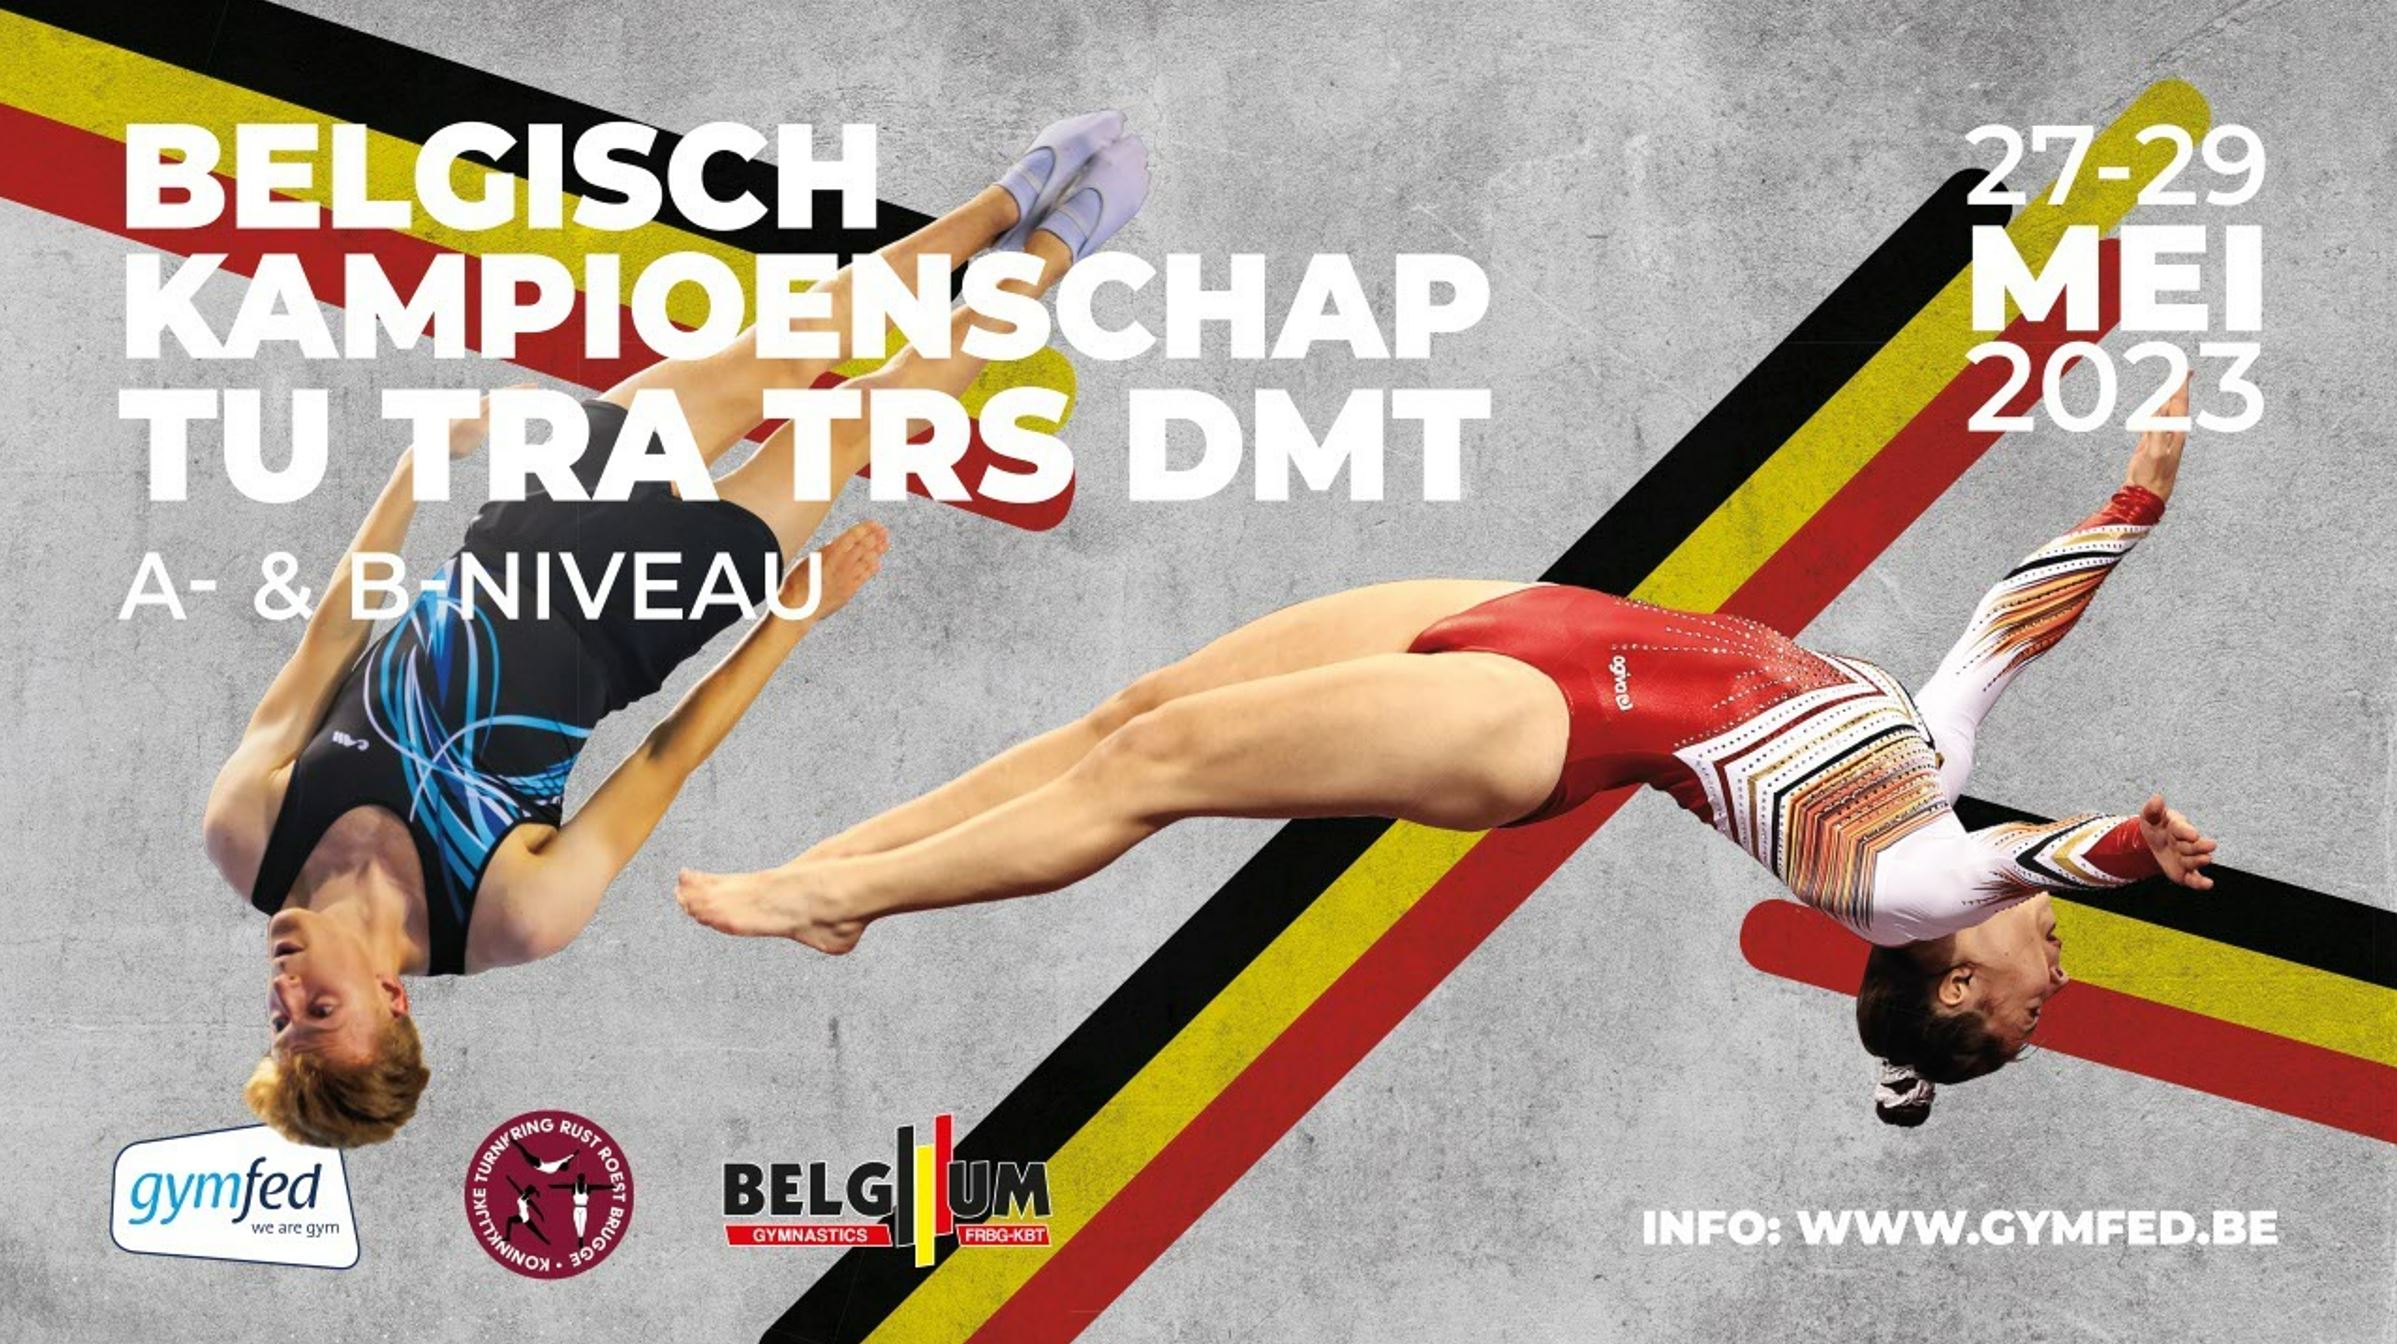 TU TRA - Belgisch Kampioenschap TU TRA TRS DMT A-, B-niveau